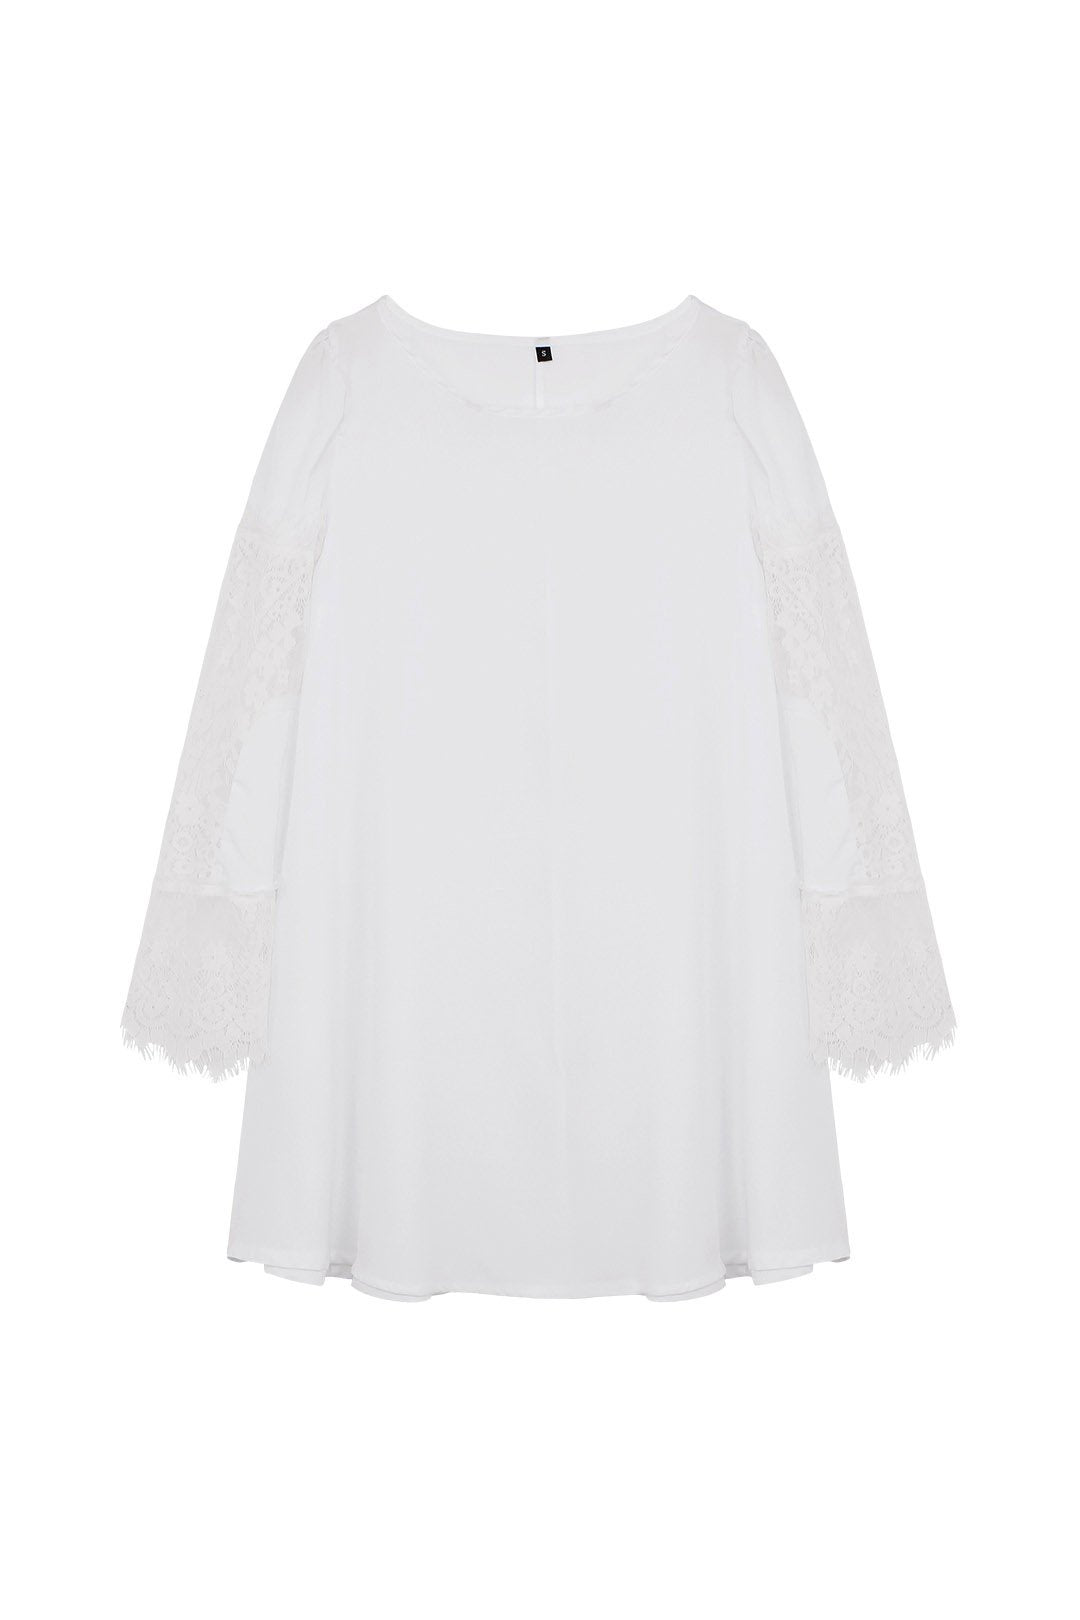 Wholesale White Plain Lace Chiffon Dresses